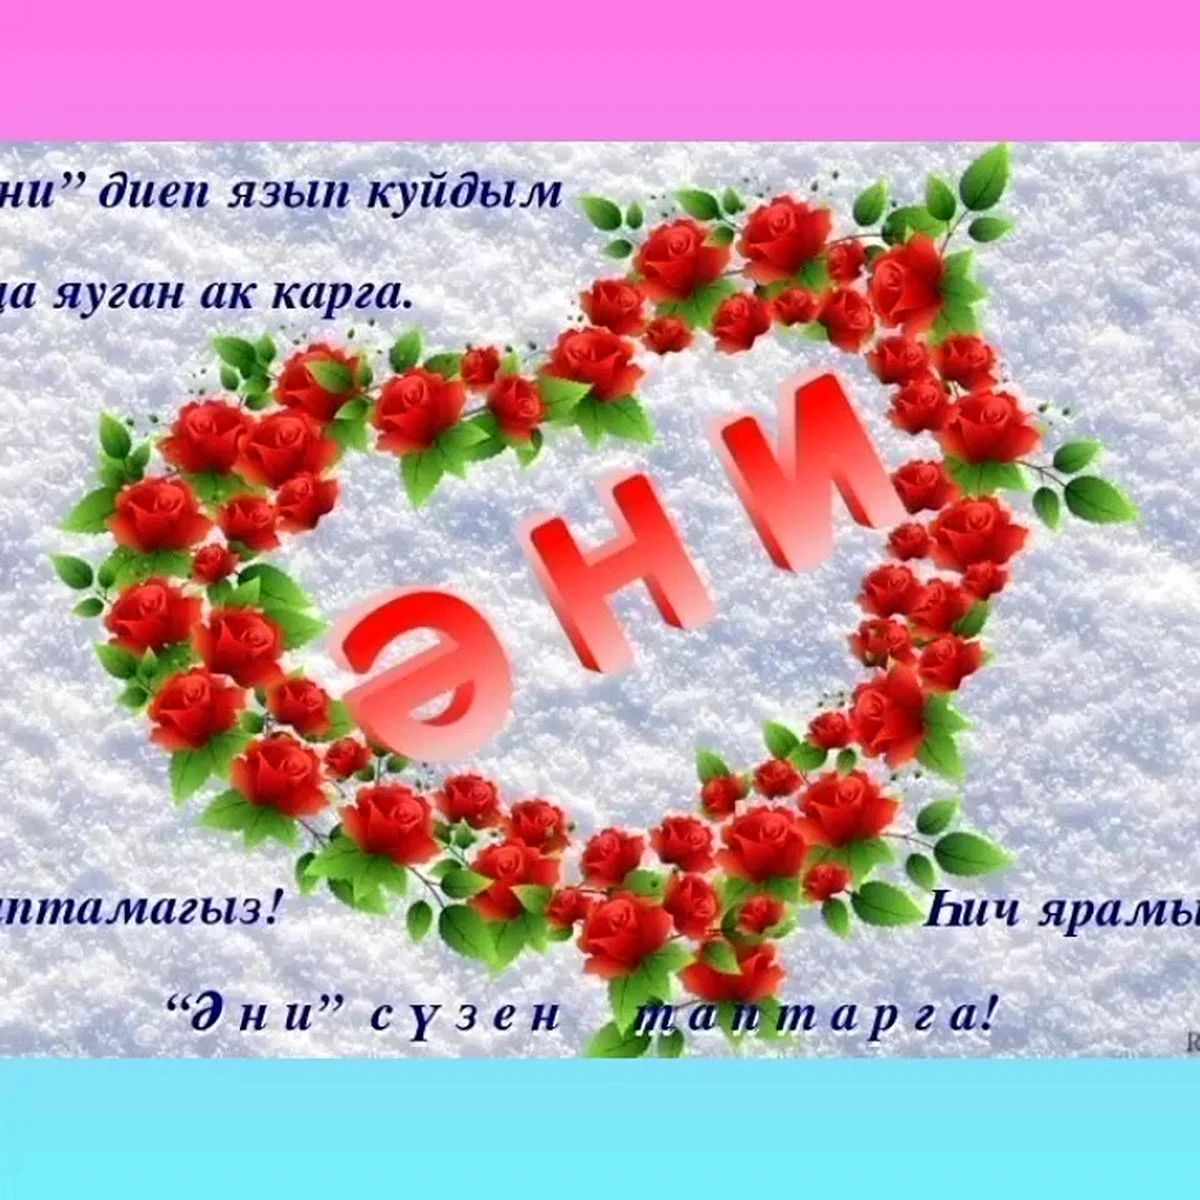 Украшение страницы с фонами и обоями для поздравления с Днем матери на татарском